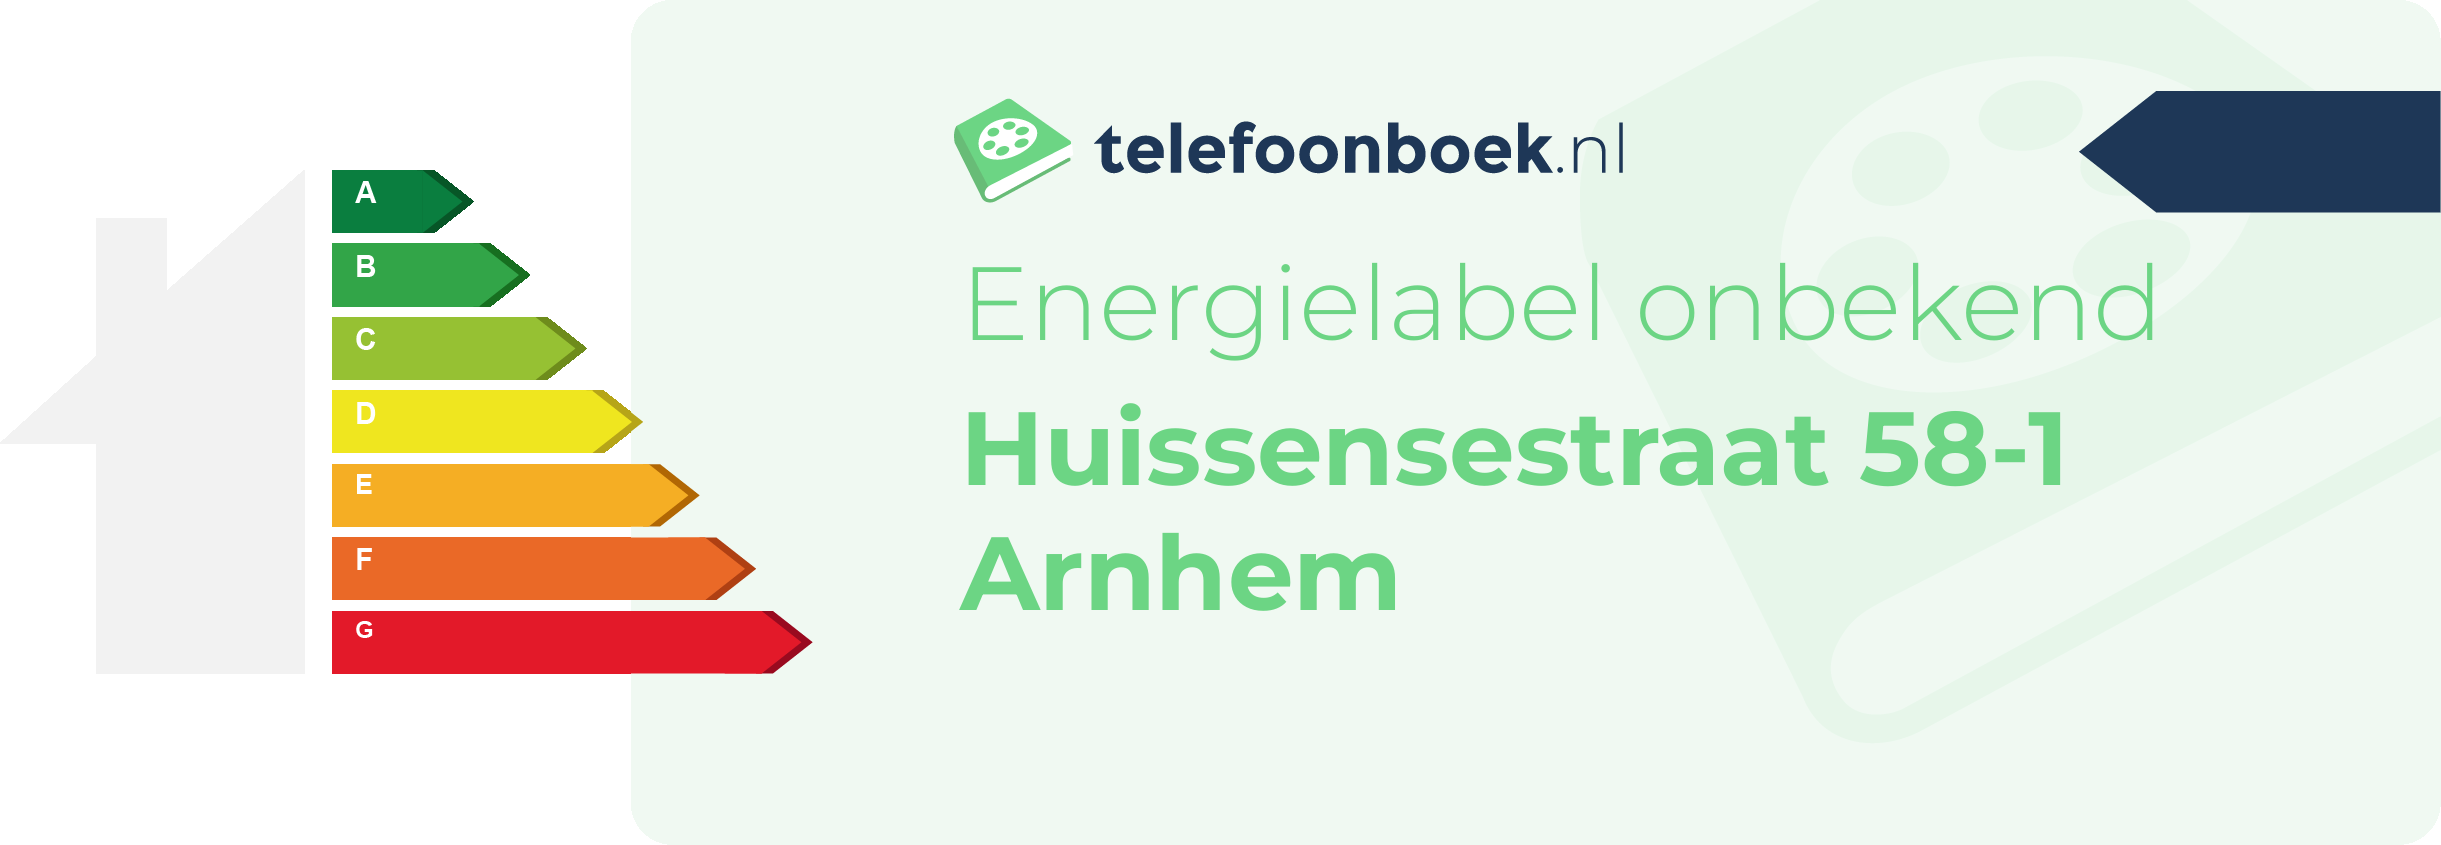 Energielabel Huissensestraat 58-1 Arnhem